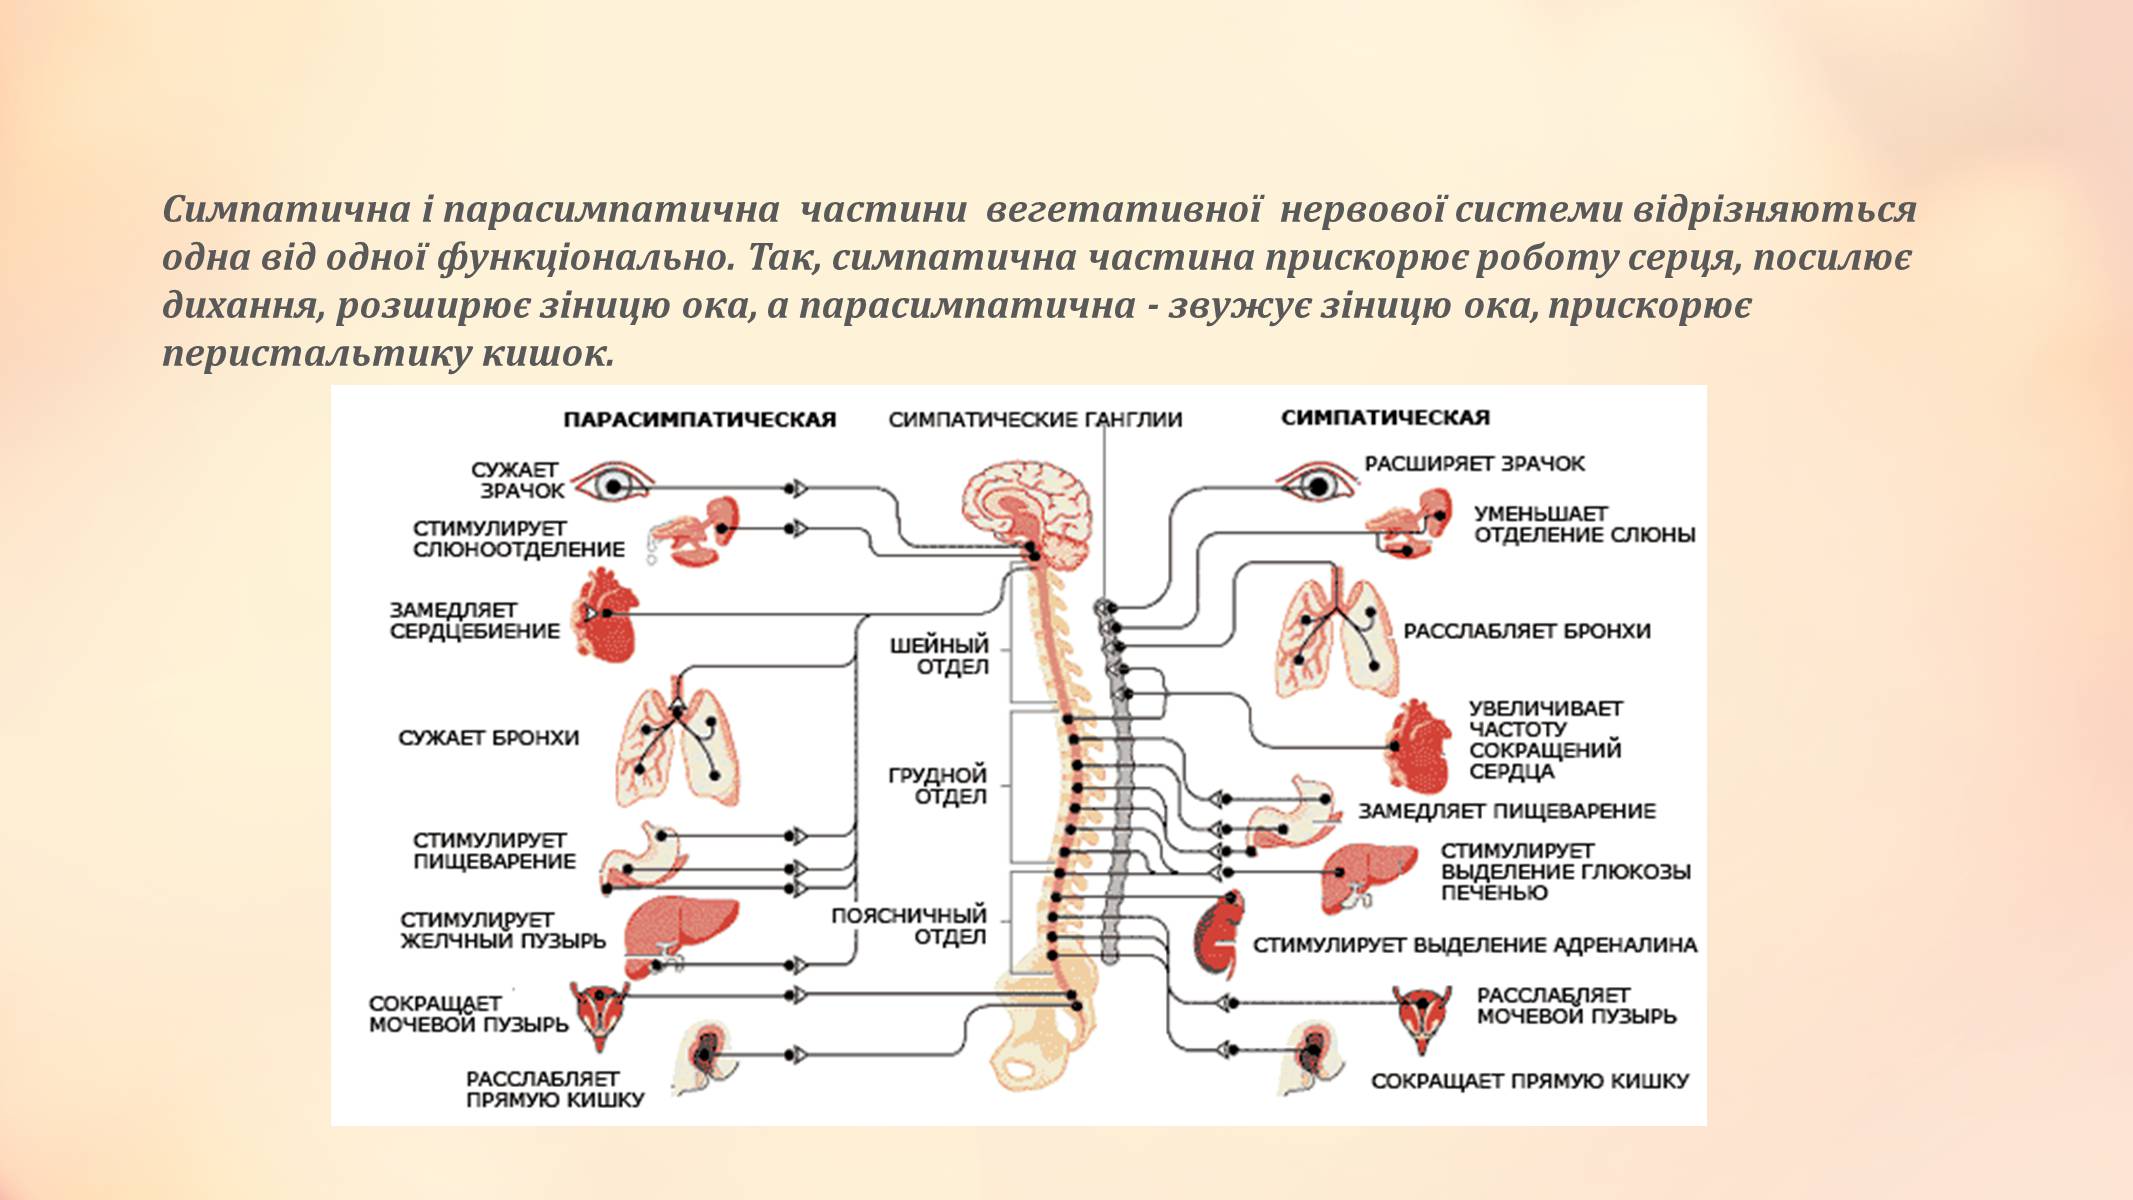 Нервные центры симпатического отдела. Парасимпатический отдел вегетативной нервной системы. Автономная нервная система: парасимпатическая система. Отделы нервной системы человека симпатическая и парасимпатическая. Центральный отдел парасимпатической нервной системы.